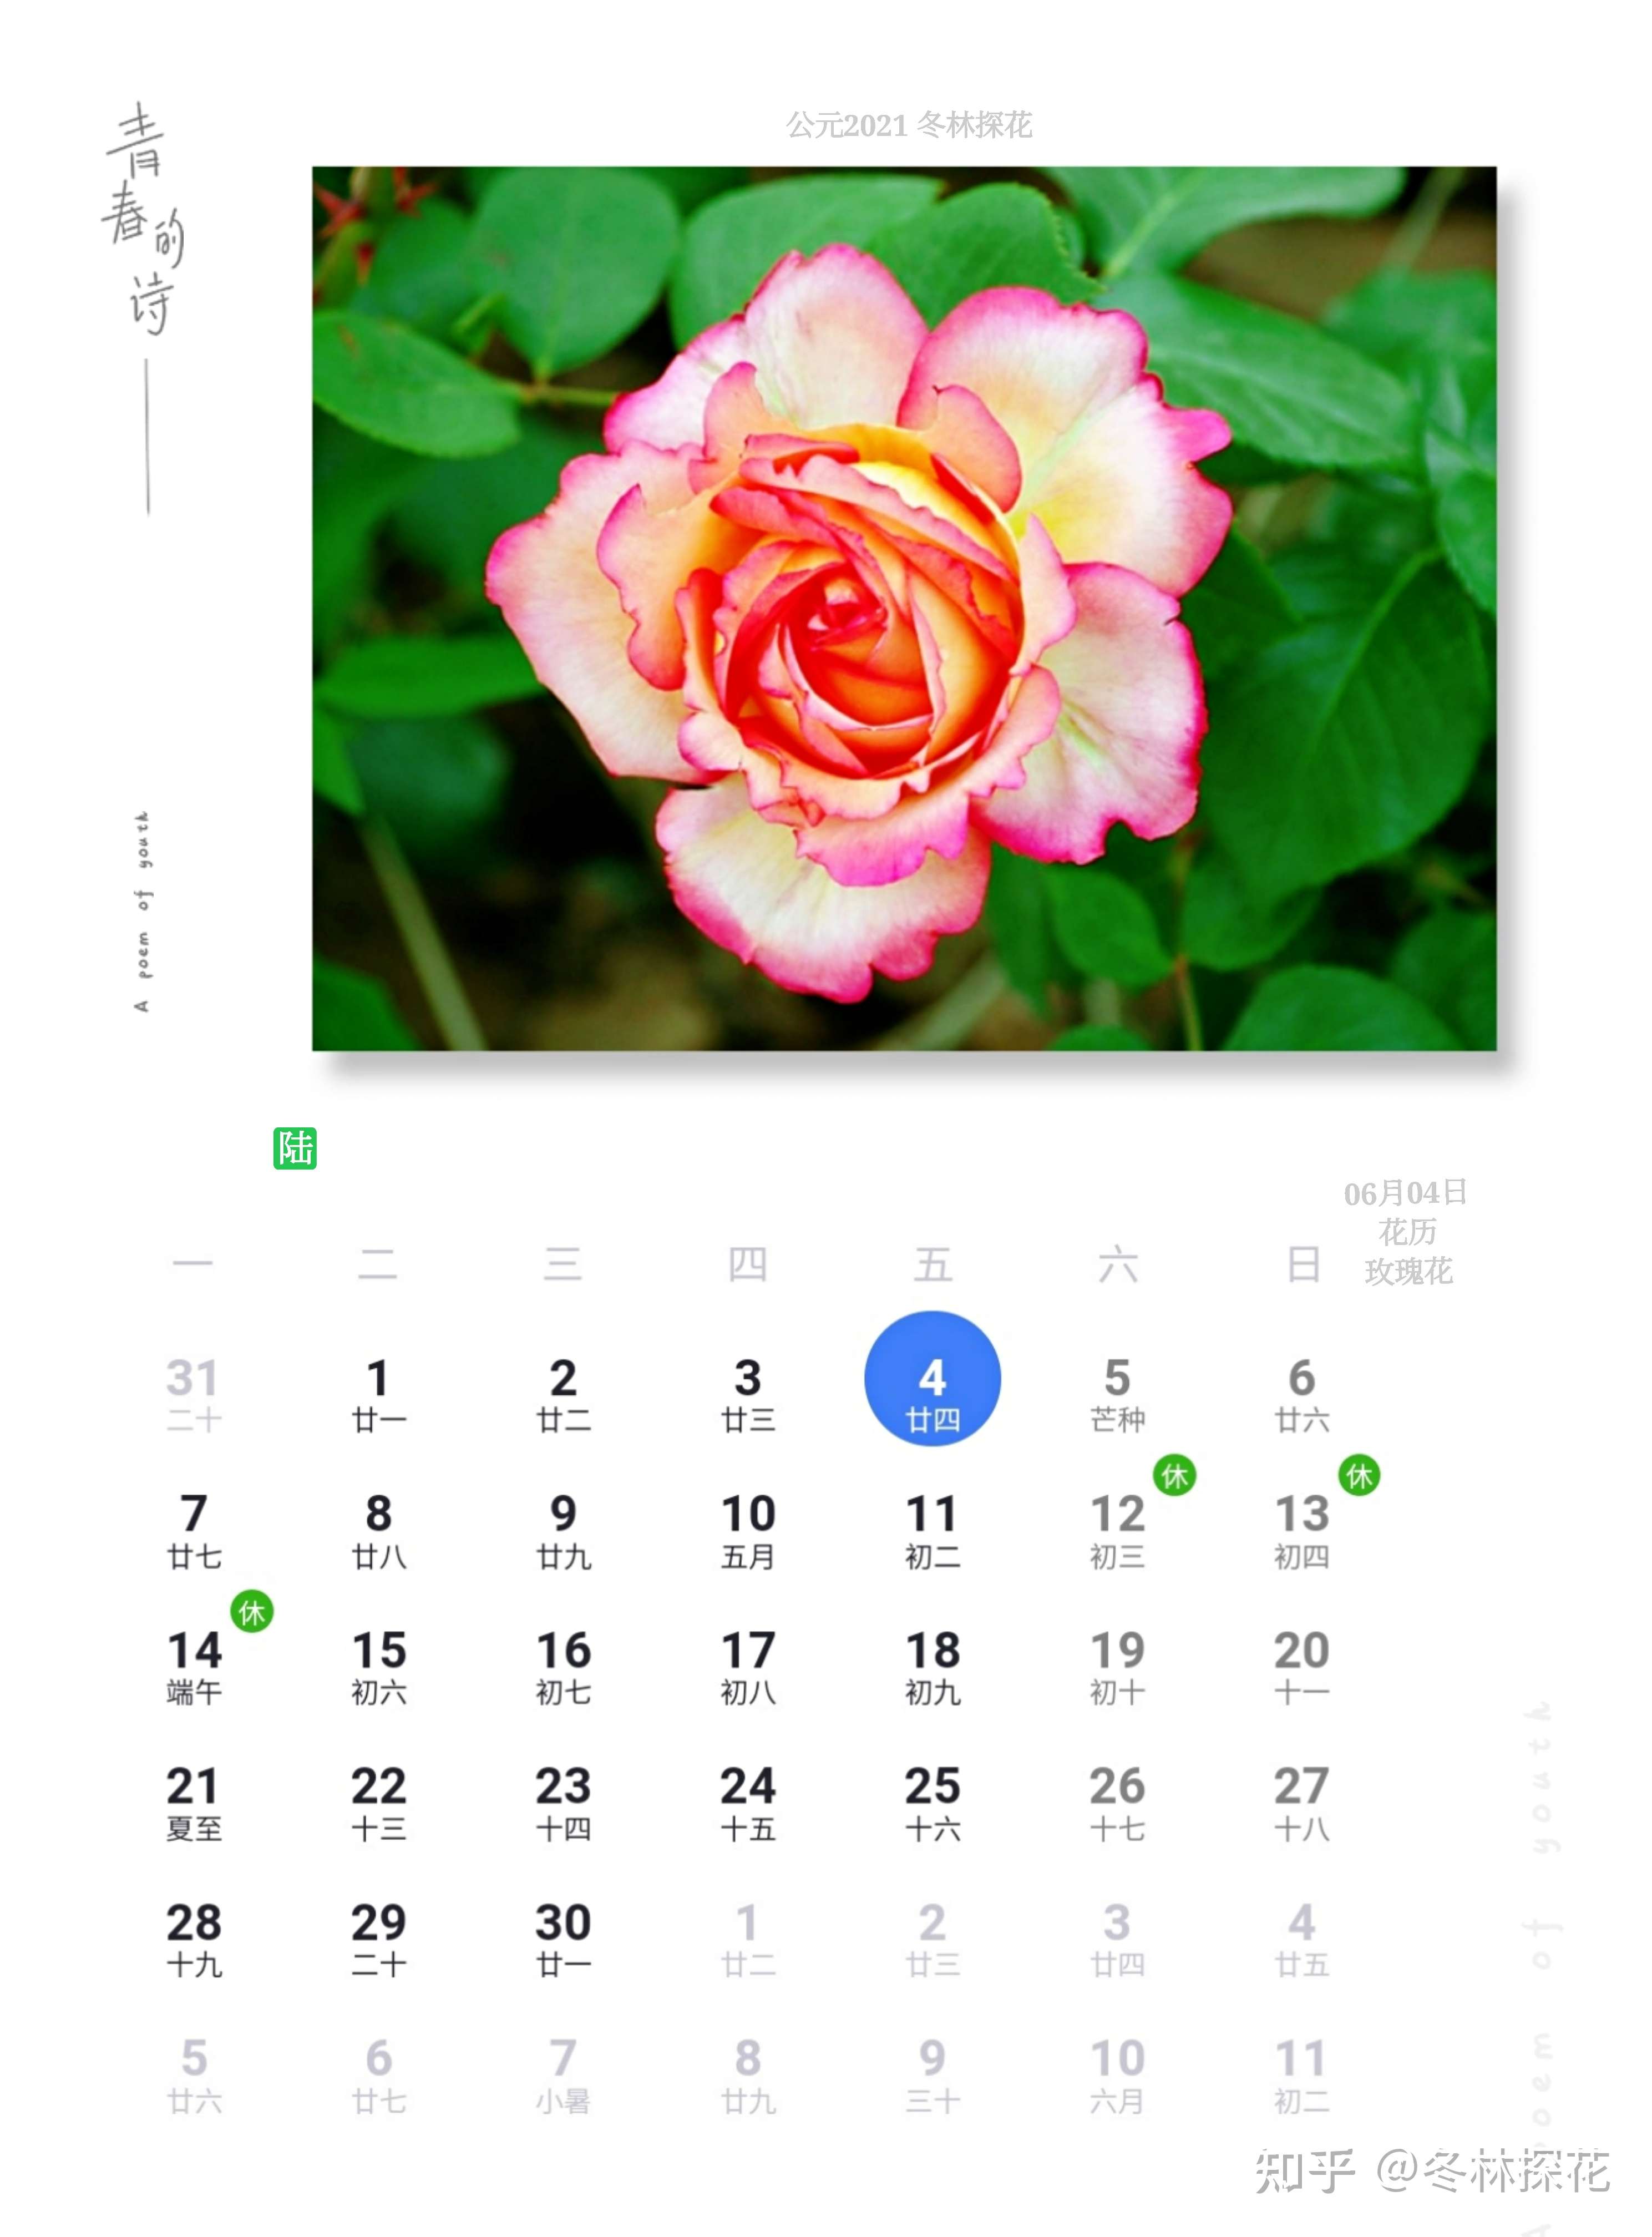 鲜花日历 的想法: 6月4日花历,玫瑰花 